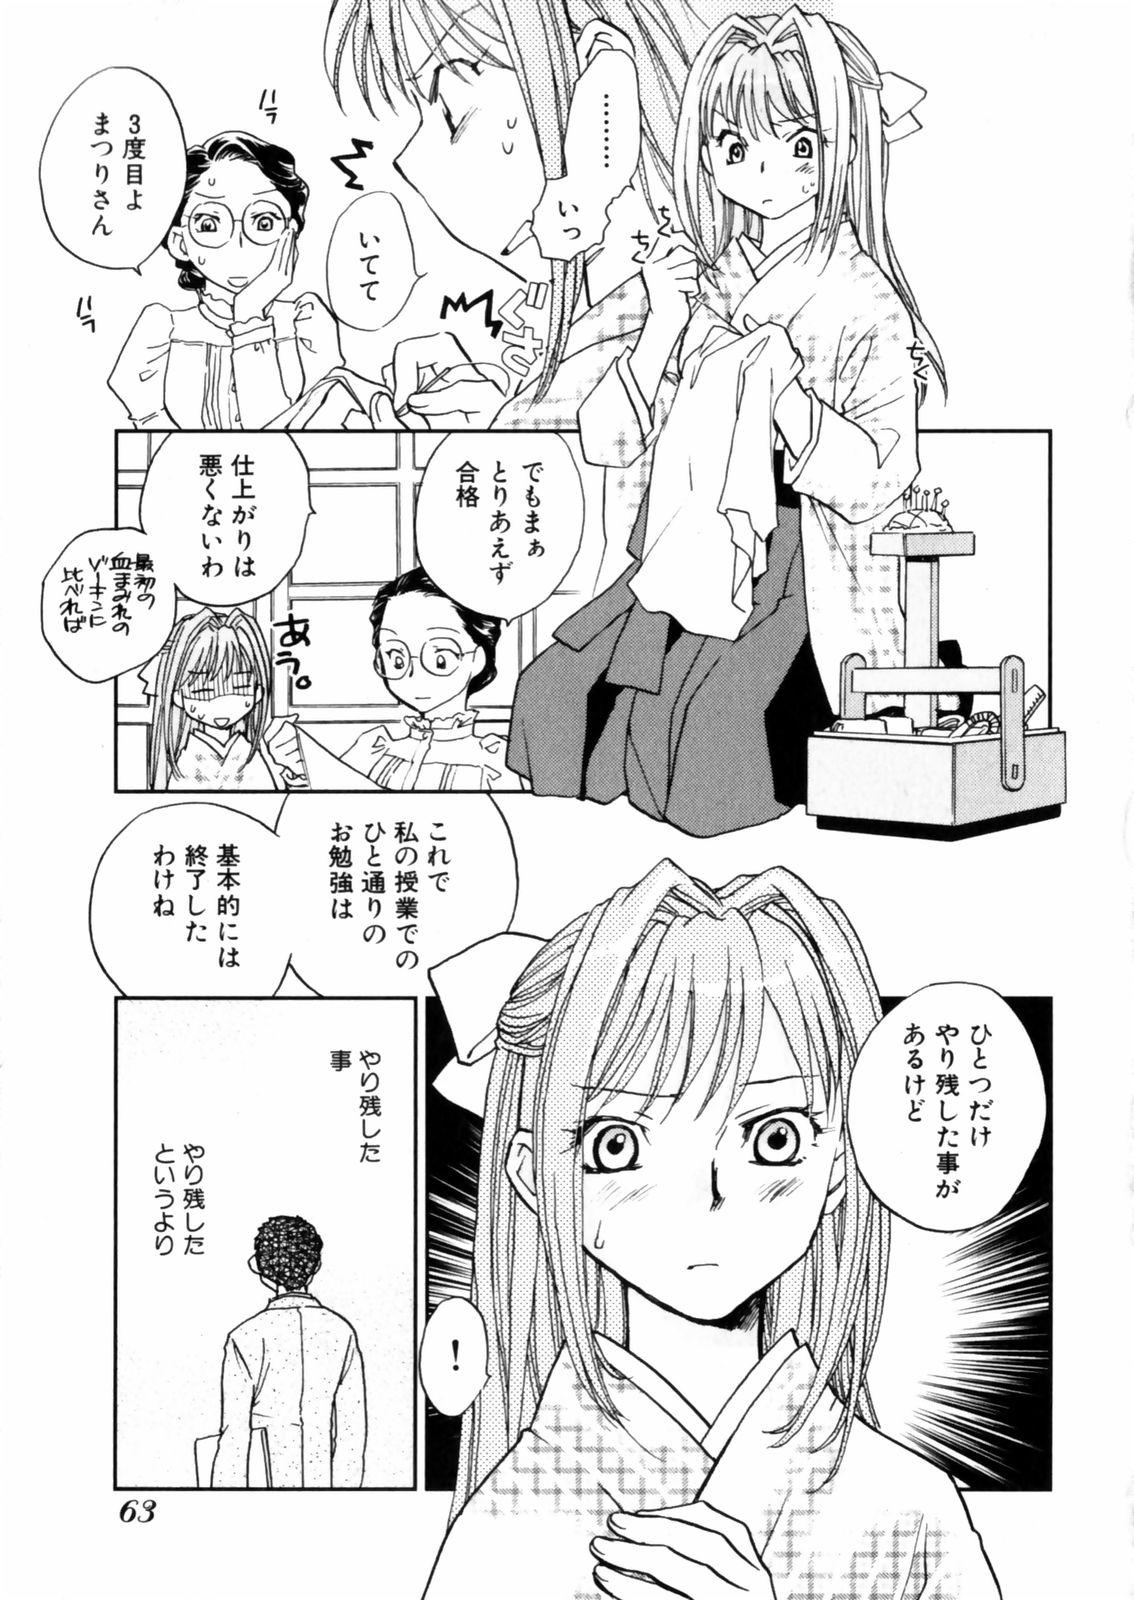 [Okano Ahiru] Hanasake ! Otome Juku (Otome Private Tutoring School) Vol.2 64